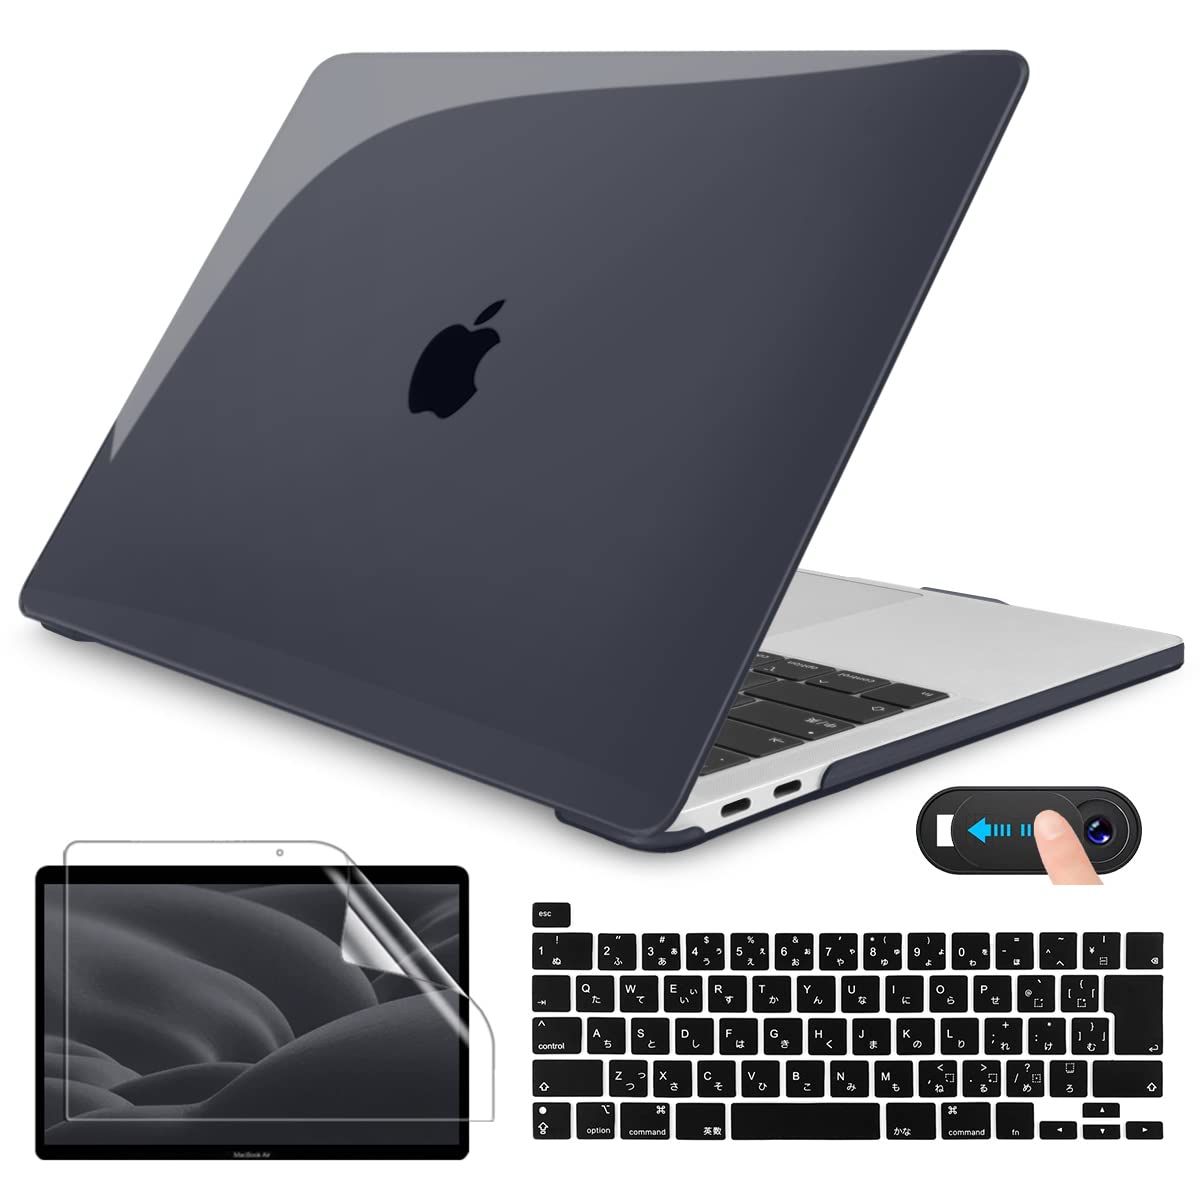 商品情報商品の説明説明 新型 MacBook Pro 13 ケース、ブラック 透明 シェルカバー +画面フィルム+日本語JIS キーボードカバー + webcam coverの4in1セットです。 ケース対応のパソコンとモデル：2020 2021 2022 New MacBook Pro 13 inch with Touch Bar & Touch ID (A2251/A2289/A2338 M2 M1) ATTENTION:ご注意、ご購入前に、Macbookの後ろのモデル番号「Axxxx」を対照し、ご確認の上にお買い求めください。 ケースについて、Hard Shell Case Features プラスチック製で、触り心地よい同時、優れた保護性があります。アップルのロゴを切り抜きません、完全カバーで、MacBookを傷や汚れから保護します。ケースのデザインによって、アップルのロゴは見えます。ご注意：透明度は色によって異なります。どうぞご了承ください。 シンプルなデザインケース、本来の機能を邪魔しないで、 Macbookカバーをつけたまま各機能をいつもの通り使えます。MacBook の開閉、充電、周辺機器の接続に可能、とても便利です。 A2338/A2251/A2289用の日本語JIS配列キーボードカバー USキーボードと違って、日本語キーボードカバー専用に設計されJIS配列キーボードカバーです。（Japanese layout keyboard cover,Not US layout,please notice it）。高級の無毒シリコーン素材を採用し、キズがつきにくいし、滑りにくいし、耐久性があります。 キーボードをほこり、キーの磨耗、汚れ、水などから完全に保護します。汚れた場合は中性洗剤で何度でも洗うことができます。再利用可能です。 画面フィルム、保護スクリーンプロテクター Screen protector付き。 極薄、厚さがわずか0.1mmのスクリーン用保護フィルムです 。貼りやすく剥がれにくいシートです、シートを剥がしても糊が残りません。 フィルムの貼り方：おMacBookのScreen部分を清潔して、フィルムの端から剥離フィルムを剥がし、端から気泡を押し出すように貼ってください。ご注意：フィルムを剥がす時はゆっくり剥してください。 ウェブカメラカバー webcam cover付き。 おMacBook Proのウェブカメラを隠ぺし、プライバシー保護し、パソコンを自由に使います。コンパクト、ちょうどいいのサイズで、ピッタリと合いました。極薄、貼る前と後でMacBookなどの操作性に邪魔もなく、良い使用感と保護性があります。 【商品保証】 商品保証について、CISSOOK製品はご購入日から12ヶ月間の保証がございます。商品の品質には万全を期しておりますが、万が一製品に何らかの問題がございましたら、こちらのアフターサービスに連絡してください。迅速に対応させていただきます。主な仕様 ●ケースの対応機種:2020 2021 2022年最新のMacBook Pro 13 インチ A2338 M2&M1 A2251 A2289 モデル。ご注意：他のパソコン型番に適用しません。お手数ですが、ご購入前に、必ずおMacBook　Proの後ろのモデル番号「Axxxx」を対照し、ご確認の上にお買い求めください。br●MacBook Proカバーの仕様。材質：プラスチック サイズ: 30*21.6*1cm　重量：230g　カラー：ブラック　アップルのロゴ部分を切り抜きません、完全カバーで、MacBookを傷や汚れから保護します。ケースのデザインによって、アップルのロゴは見えます。ご注意：透明度はケースとマッグブックの色によって異なります。どうぞご了承くださいませ。br●A2338/A2251/A2289通用の日本語JIS配列キーボードカバー。Attention:Japanese layout keyboard cover,Not US layout English Keyboard cover,please notice it.品質なシリコン製キーボードカバーです。柔軟性があり、丈夫、軽量、防水機能もあり、汚れている場合は、洗濯して繰り返し使用可能。超薄型、タッチ感が良い、タイピング感も快適です。br●画面保護フィルム Screen Protector + ウェブカメラカバー webcam cover付き。MacBook Proのスクリーンに保護し、ウェブカメラを隠ぺし、プライバシー保護し、パソコンを自由に使います。コンパクト、ちょうどいいのサイズで、ピッタリと合いました。極薄、貼る前と後でMacBookなどの操作性に邪魔もなく、良い使用感と保護性があります。br●お得な4in1セット。ハードケース(Hard Shell Case) +画面フィルム(Screen Protector)+日本語 JIS キーボードカバー(Japanese Keyboard cover)+ウェブカメラカバー (webcam cover)のセットです。愛用されたご貴重なMacBookを保護する為、自分の好きなスタイルを選択し、毎度パソコンを使って、気分も良くなるかもしれませんね。CISSOOK商品は信頼的な一年保証で、もし何か問題がございましたら、どうぞご遠慮なく、お問い合わせください。弊社は迅速に対応させていただきます。